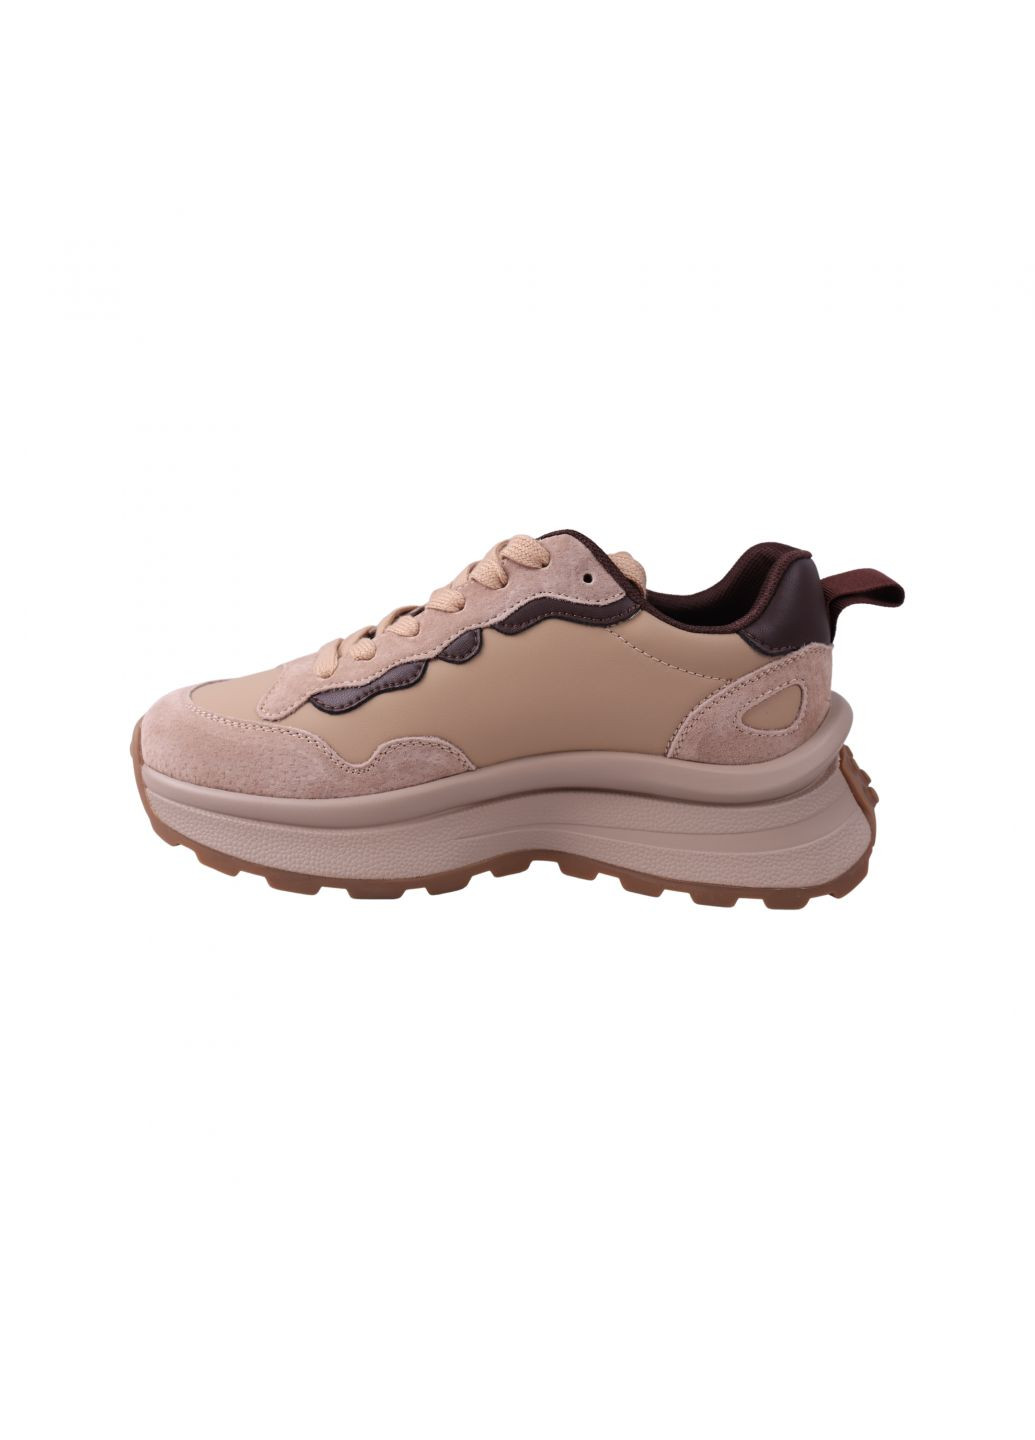 Бежеві кросівки жіночі капучіно Lifexpert 1394-23DK